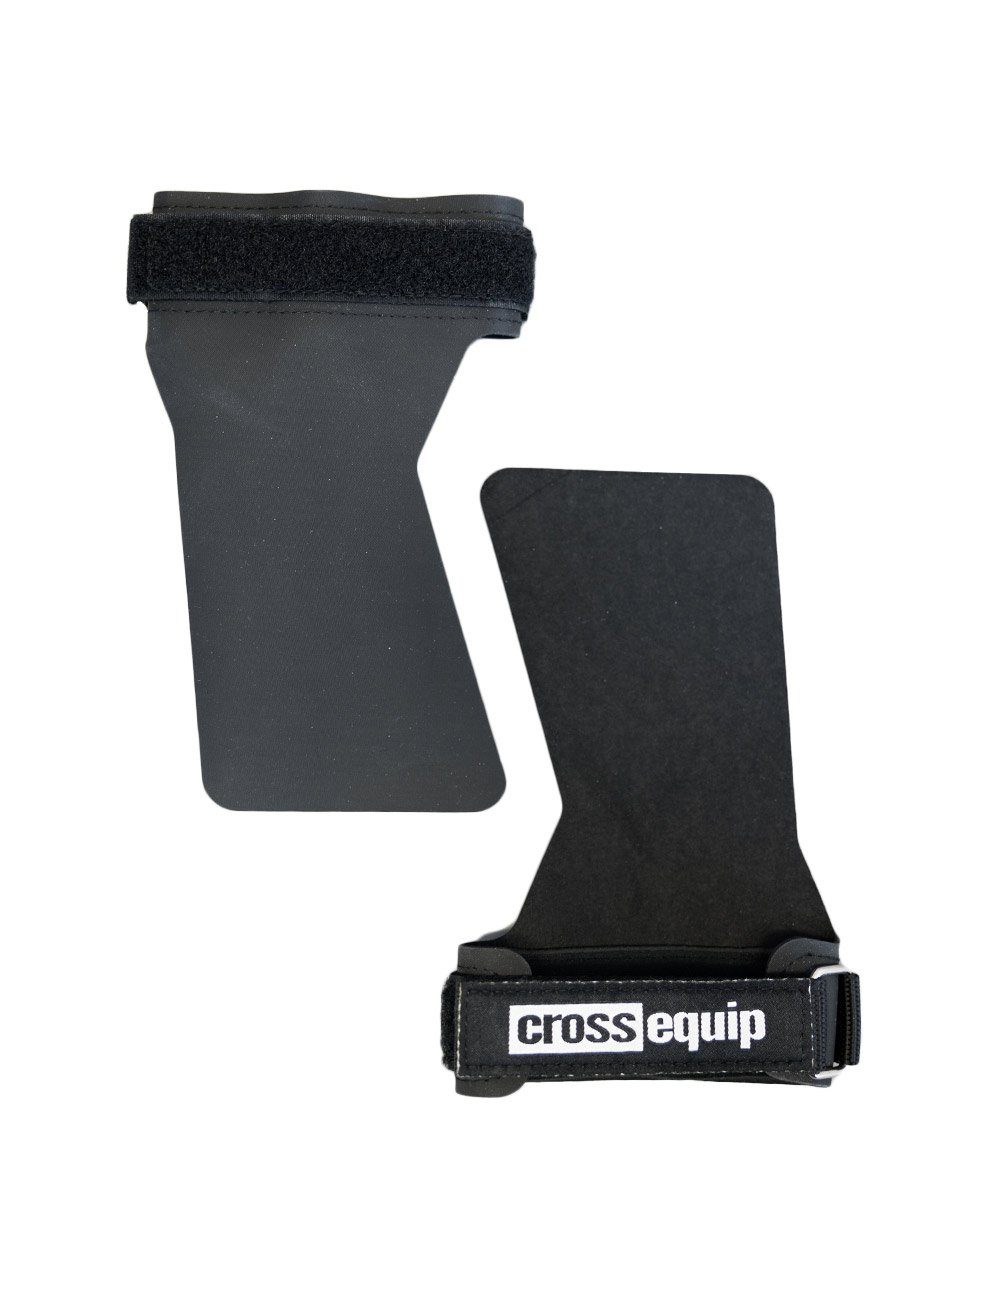 crossequip Multisporthandschuhe Cheater Grips Fitness Gummimischung Griffhilfe für einer aus speziellen gefertigt Handschuh widerstandsfähigen Krafttraining Zughilfe